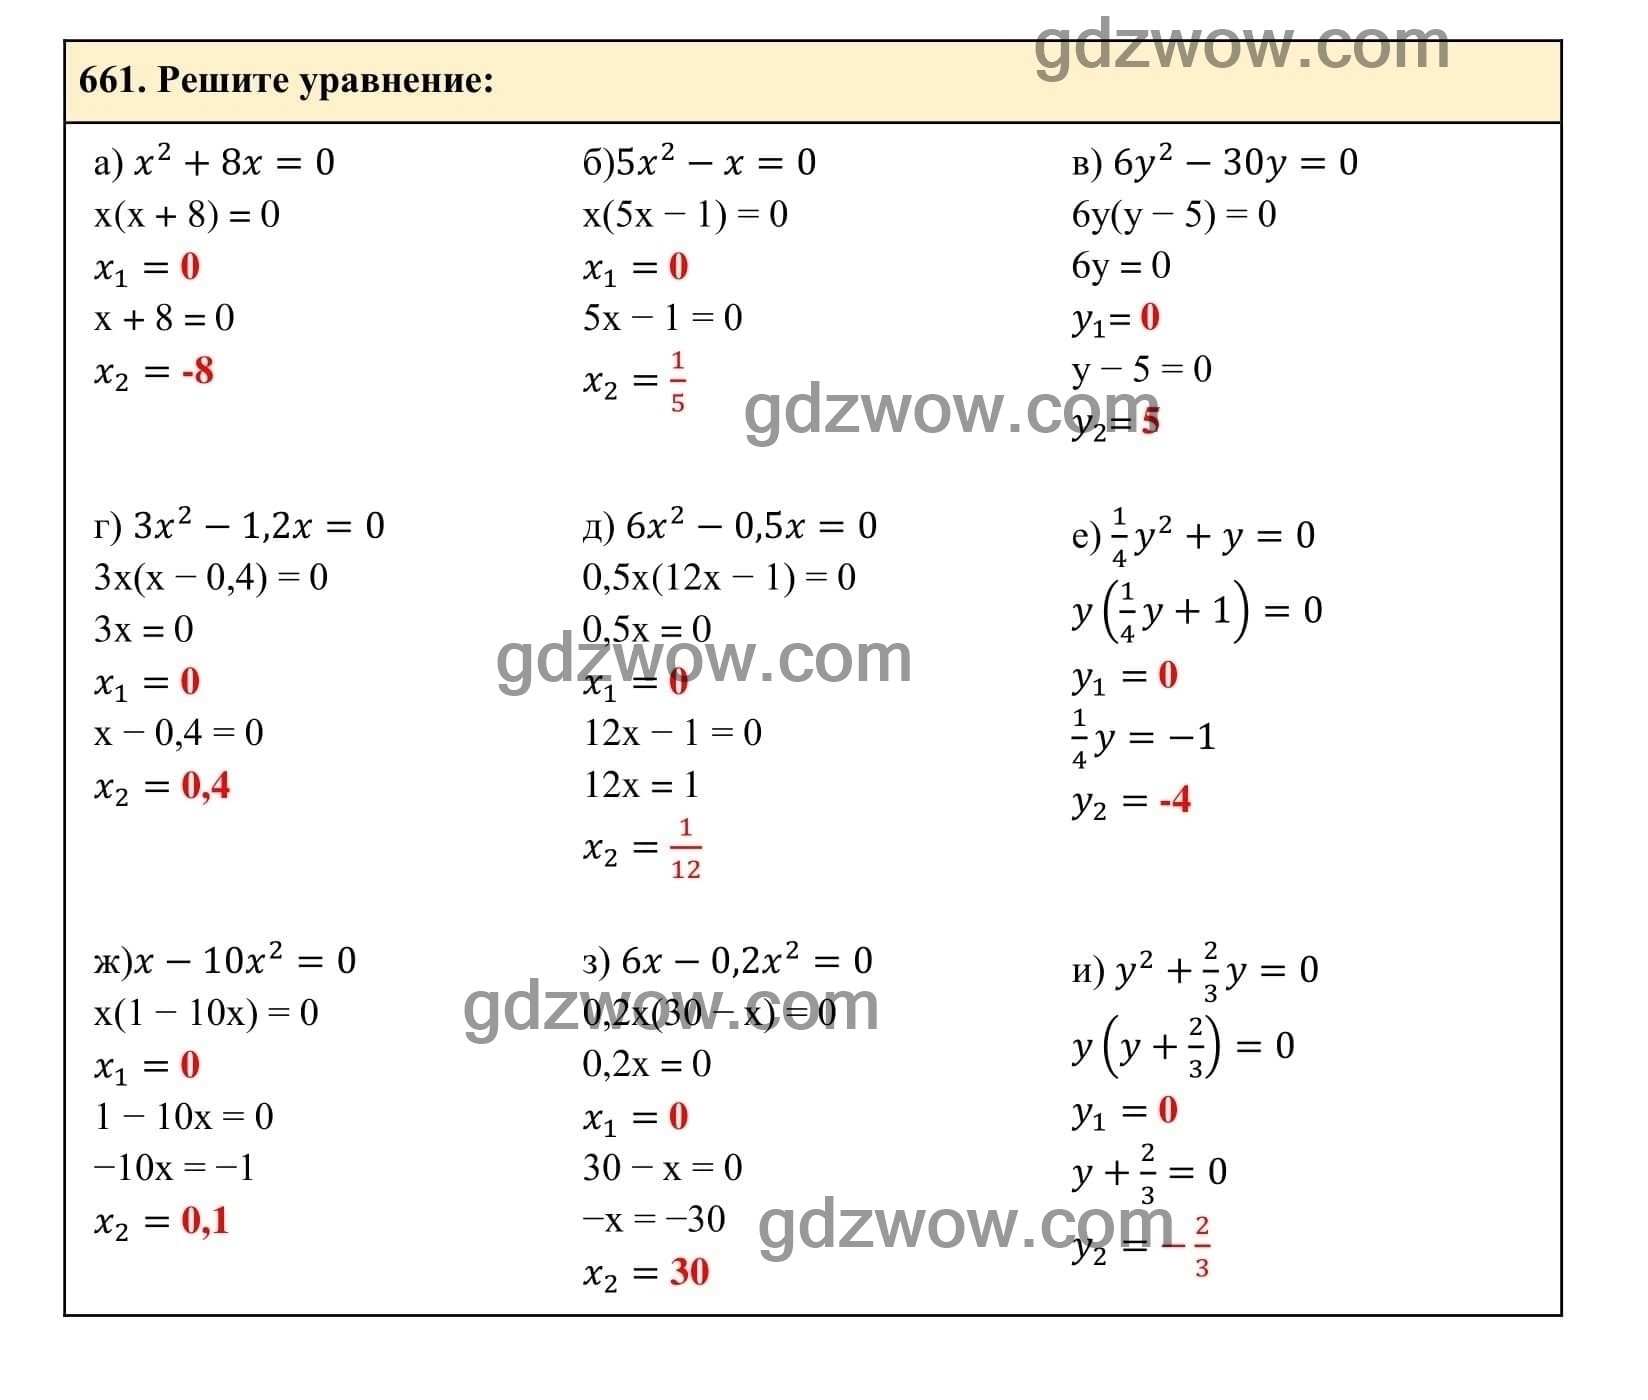 Упражнение 661 - ГДЗ по Алгебре 7 класс Учебник Макарычев (решебник) - GDZwow